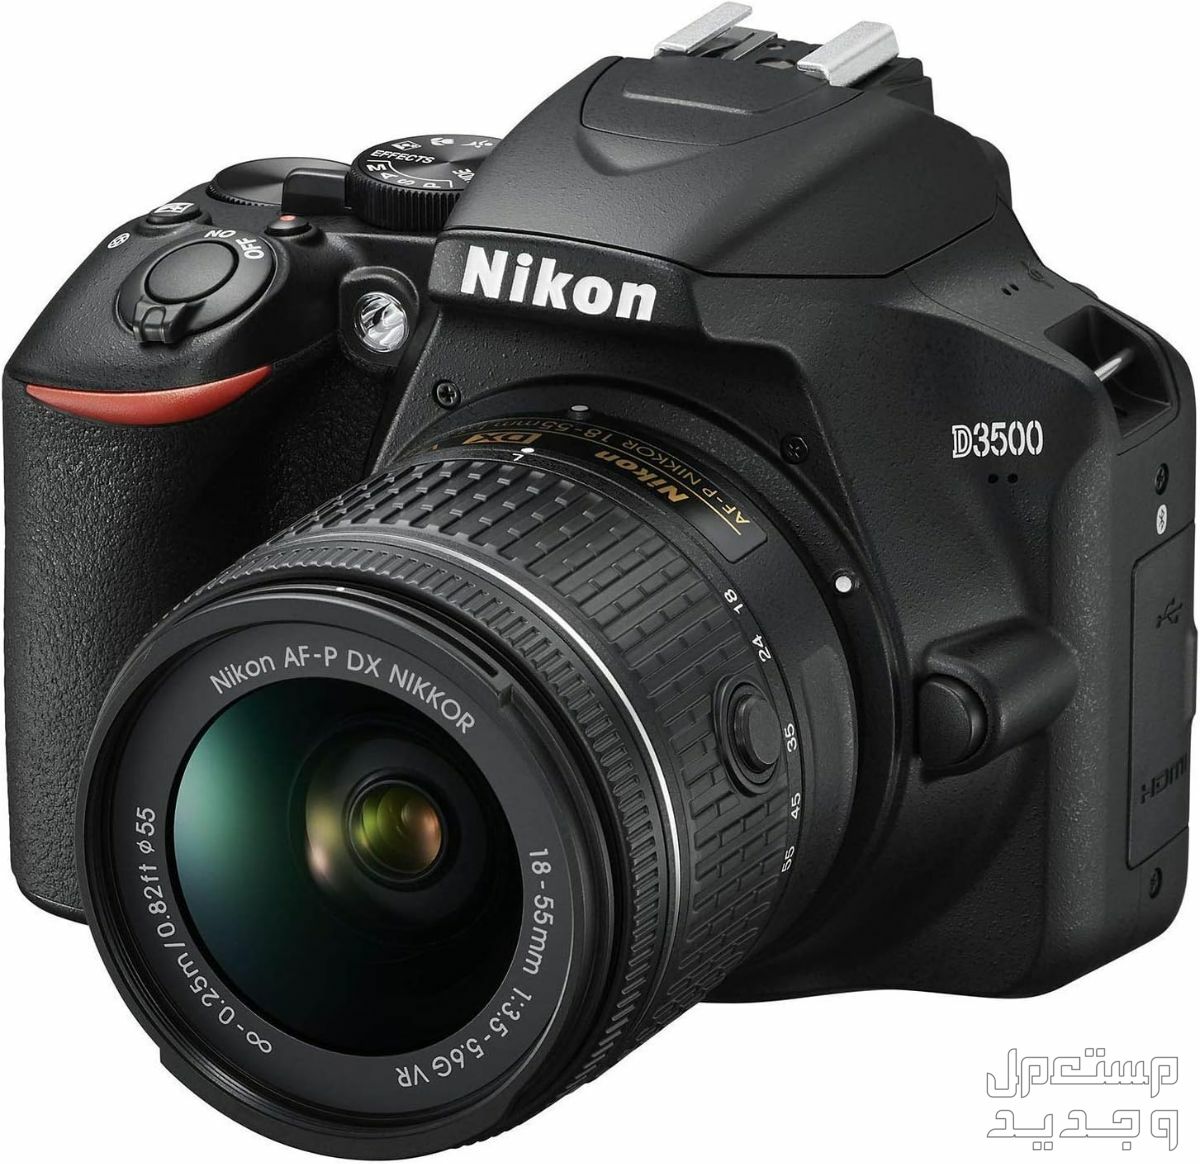 10 كاميرات تصوير ماركات عالمية بأسعار رخيصة في جيبوتي مميزات كاميرا Nikon D3500